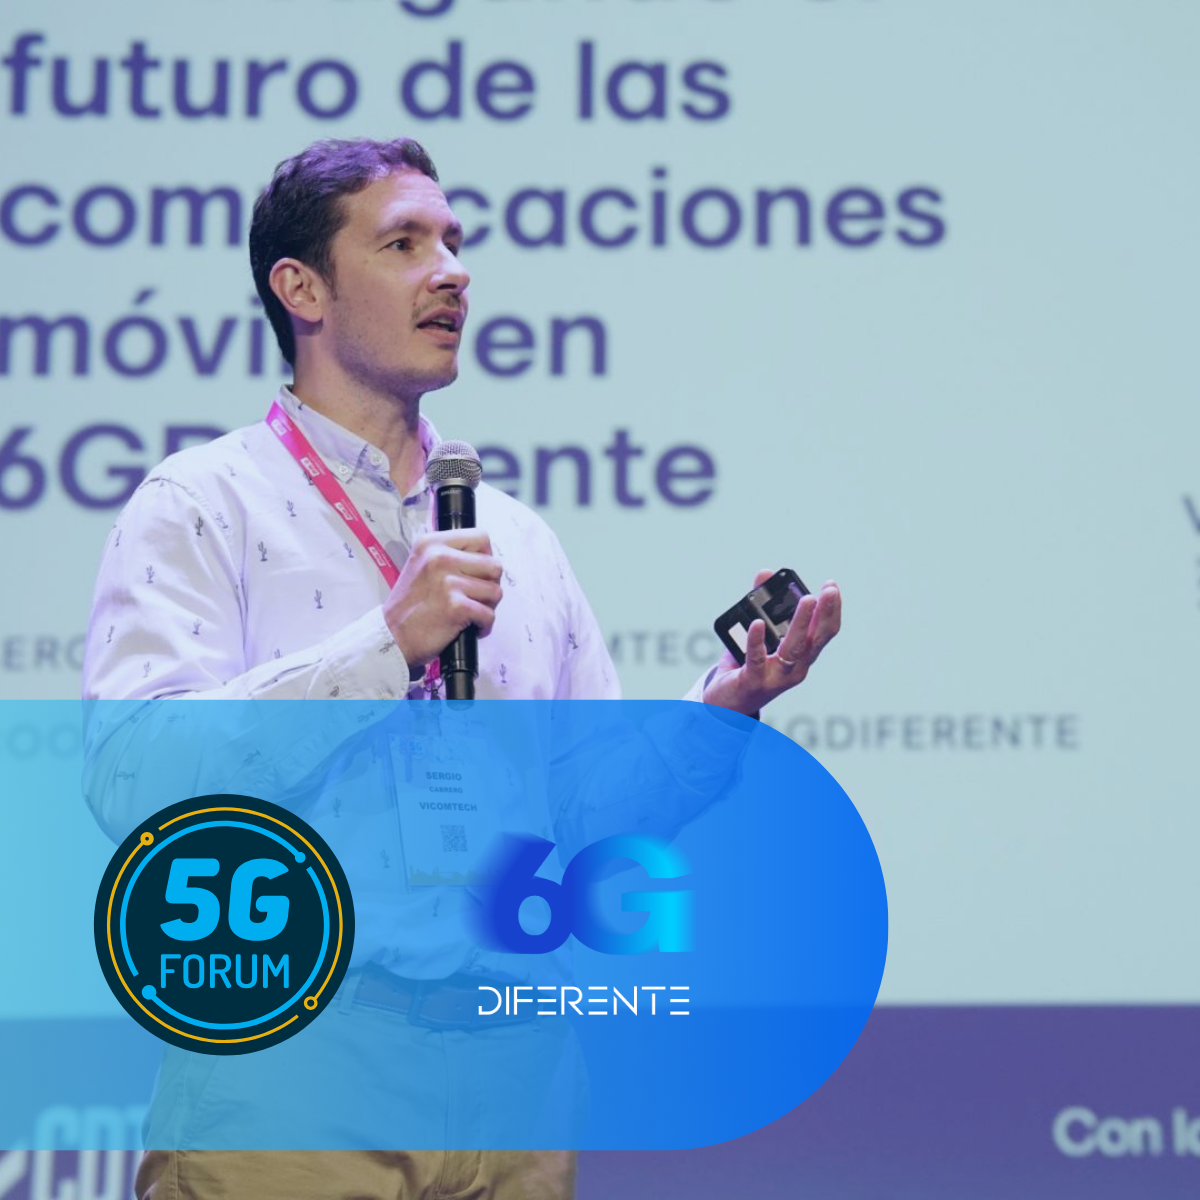 Vicomtech participa en la séptima edición del 5G FORUM en Sevilla presentando el nuevo proyecto 6G DIFERENTE